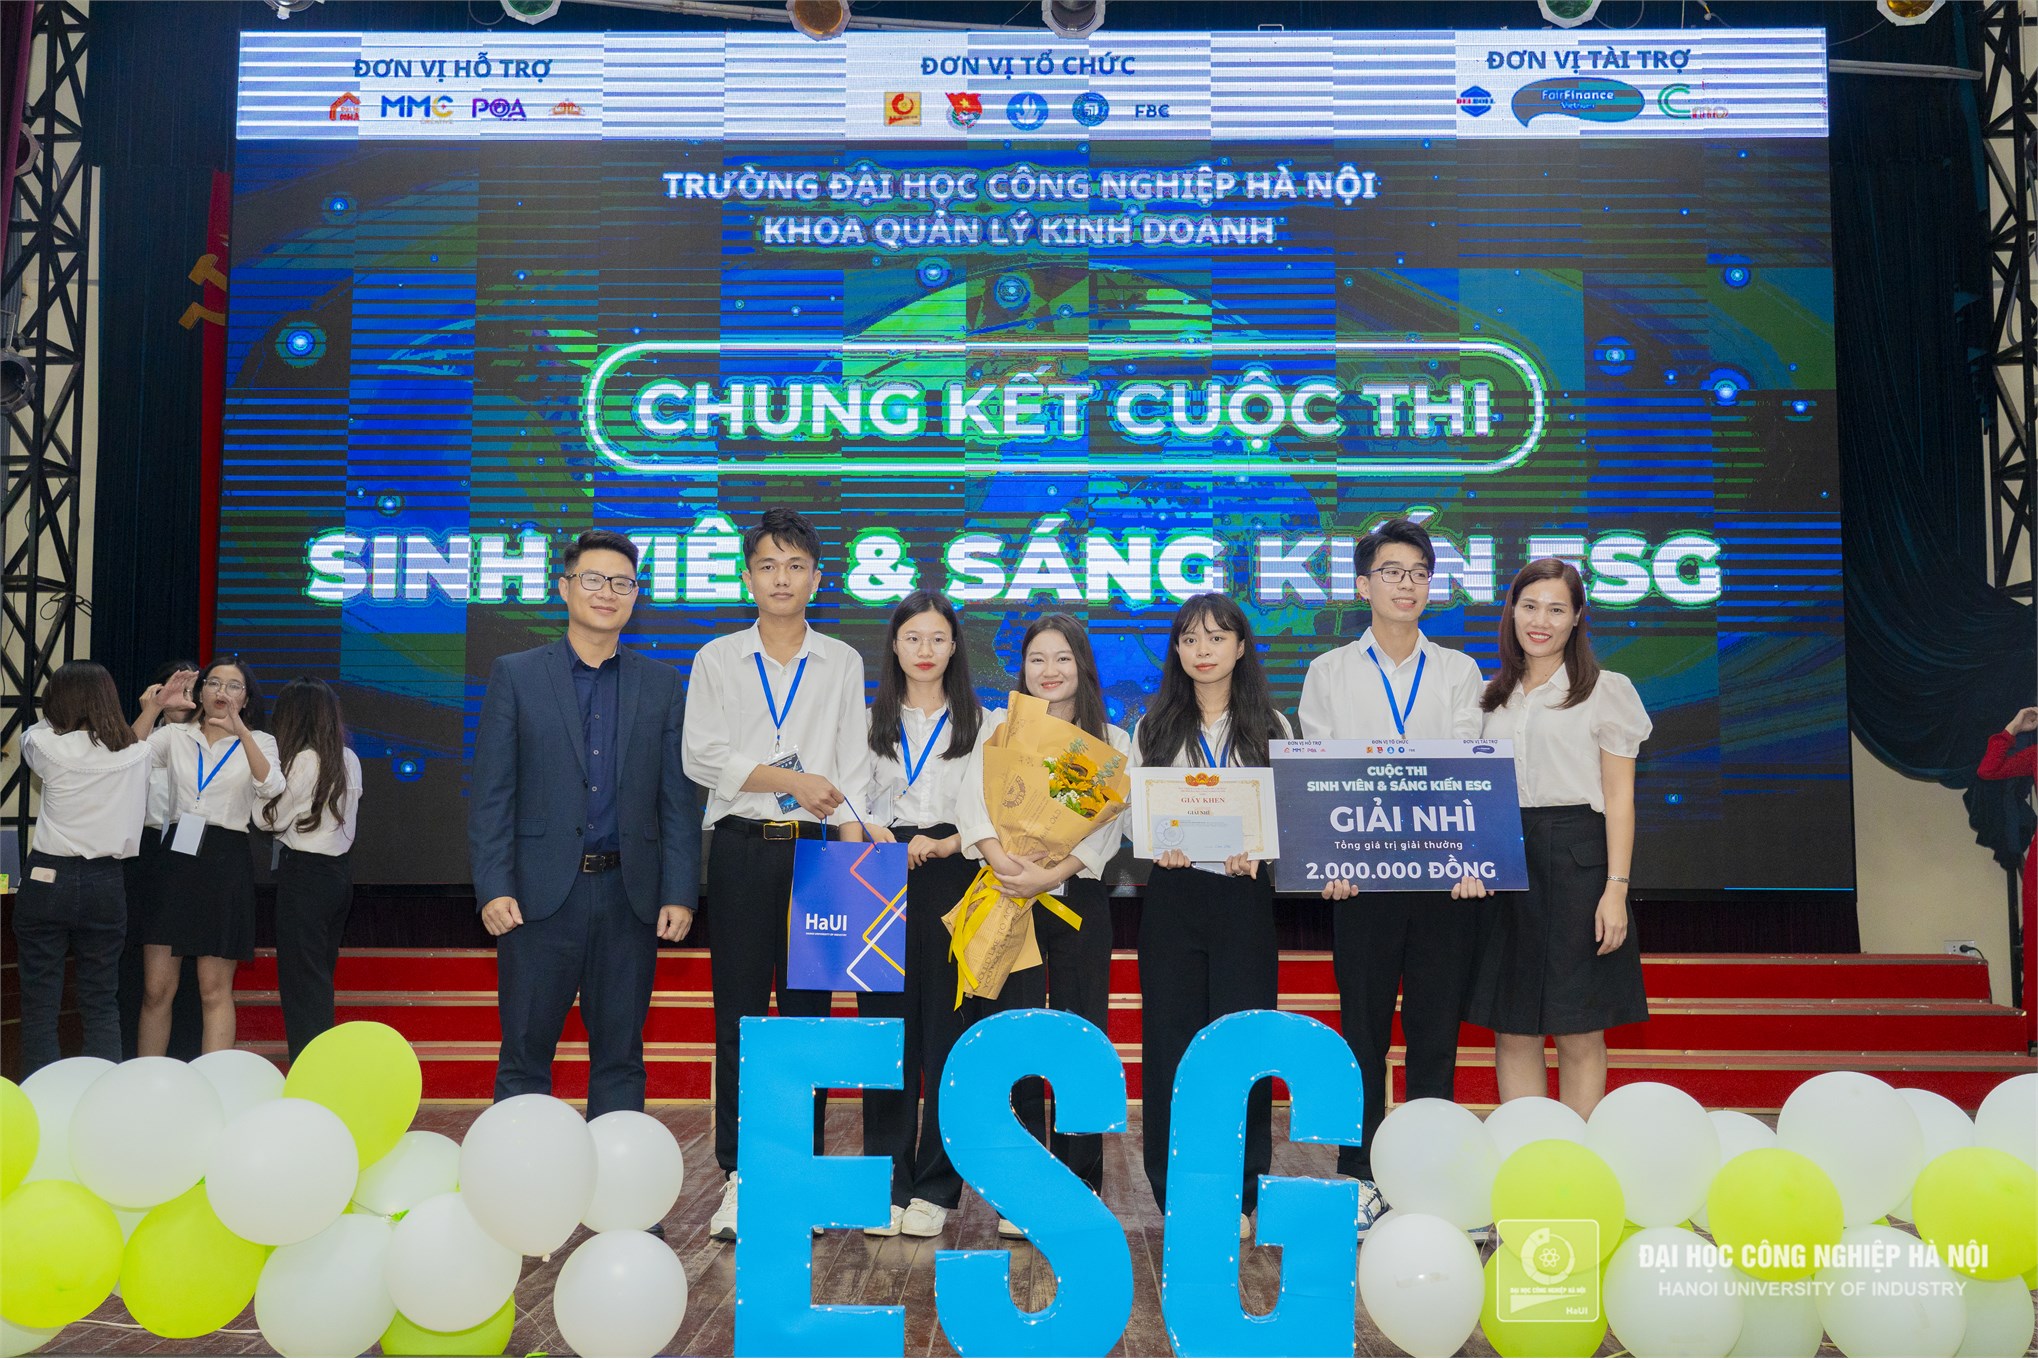 Chung kết cuộc thi Sinh viên và Sáng kiến ESG